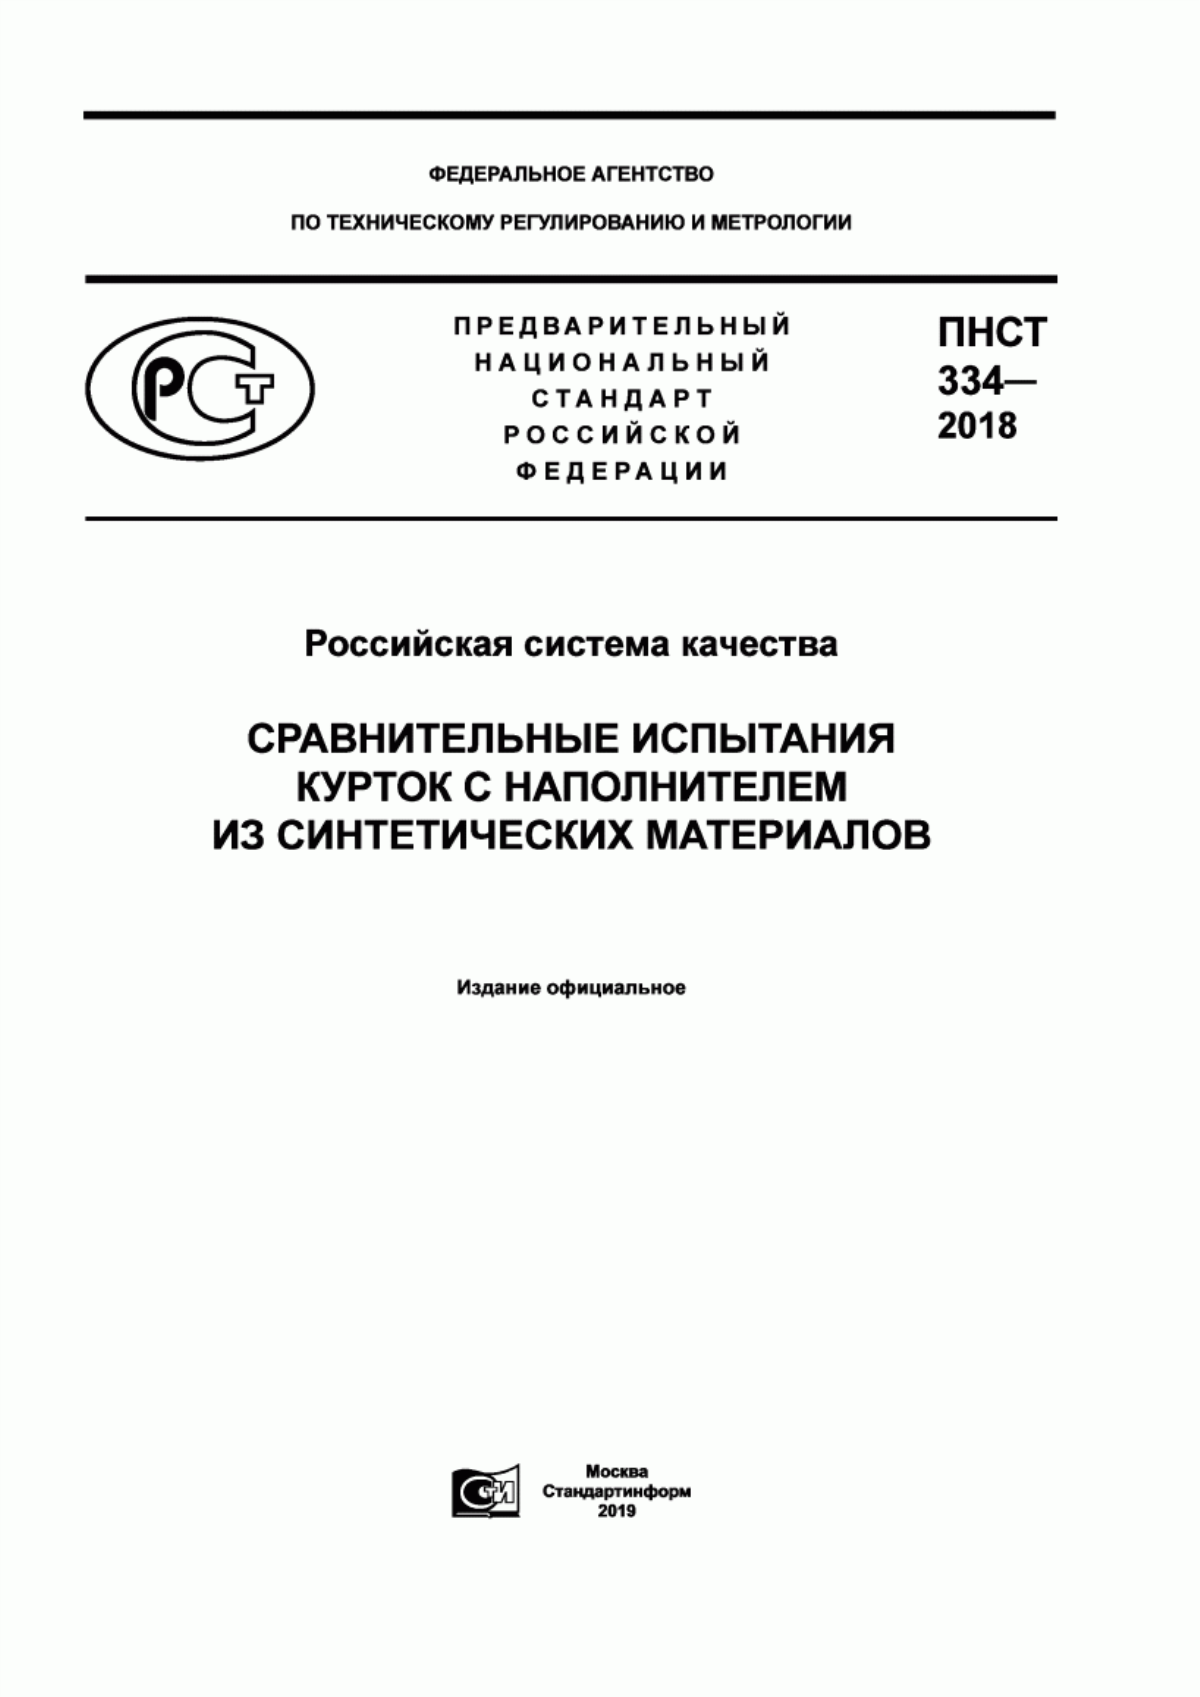 ПНСТ 334-2018 Российская система качества. Сравнительные испытания курток с наполнителем из синтетических материалов